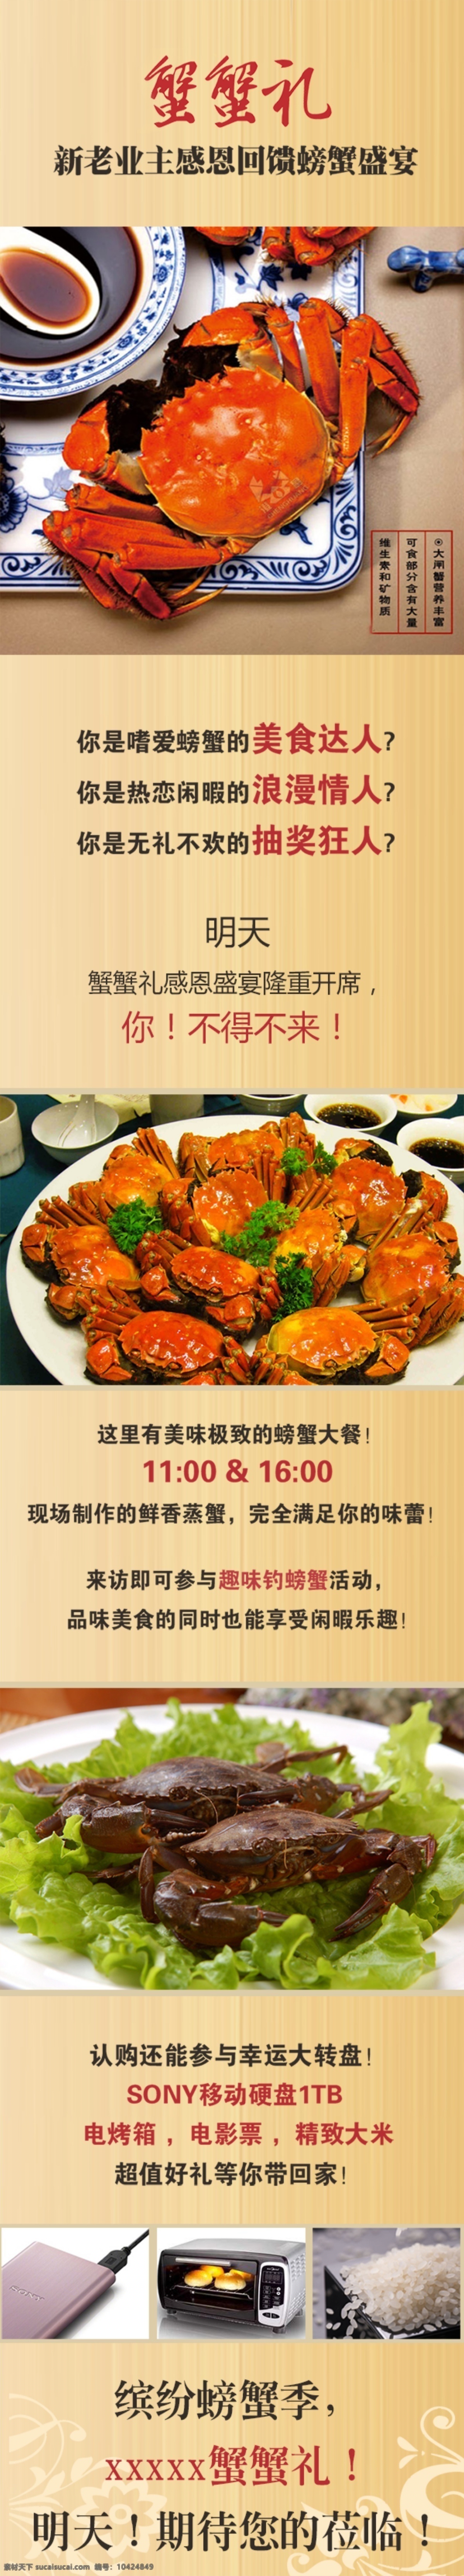 微信宣传图 美食 螃蟹 活动 抽奖 黄色